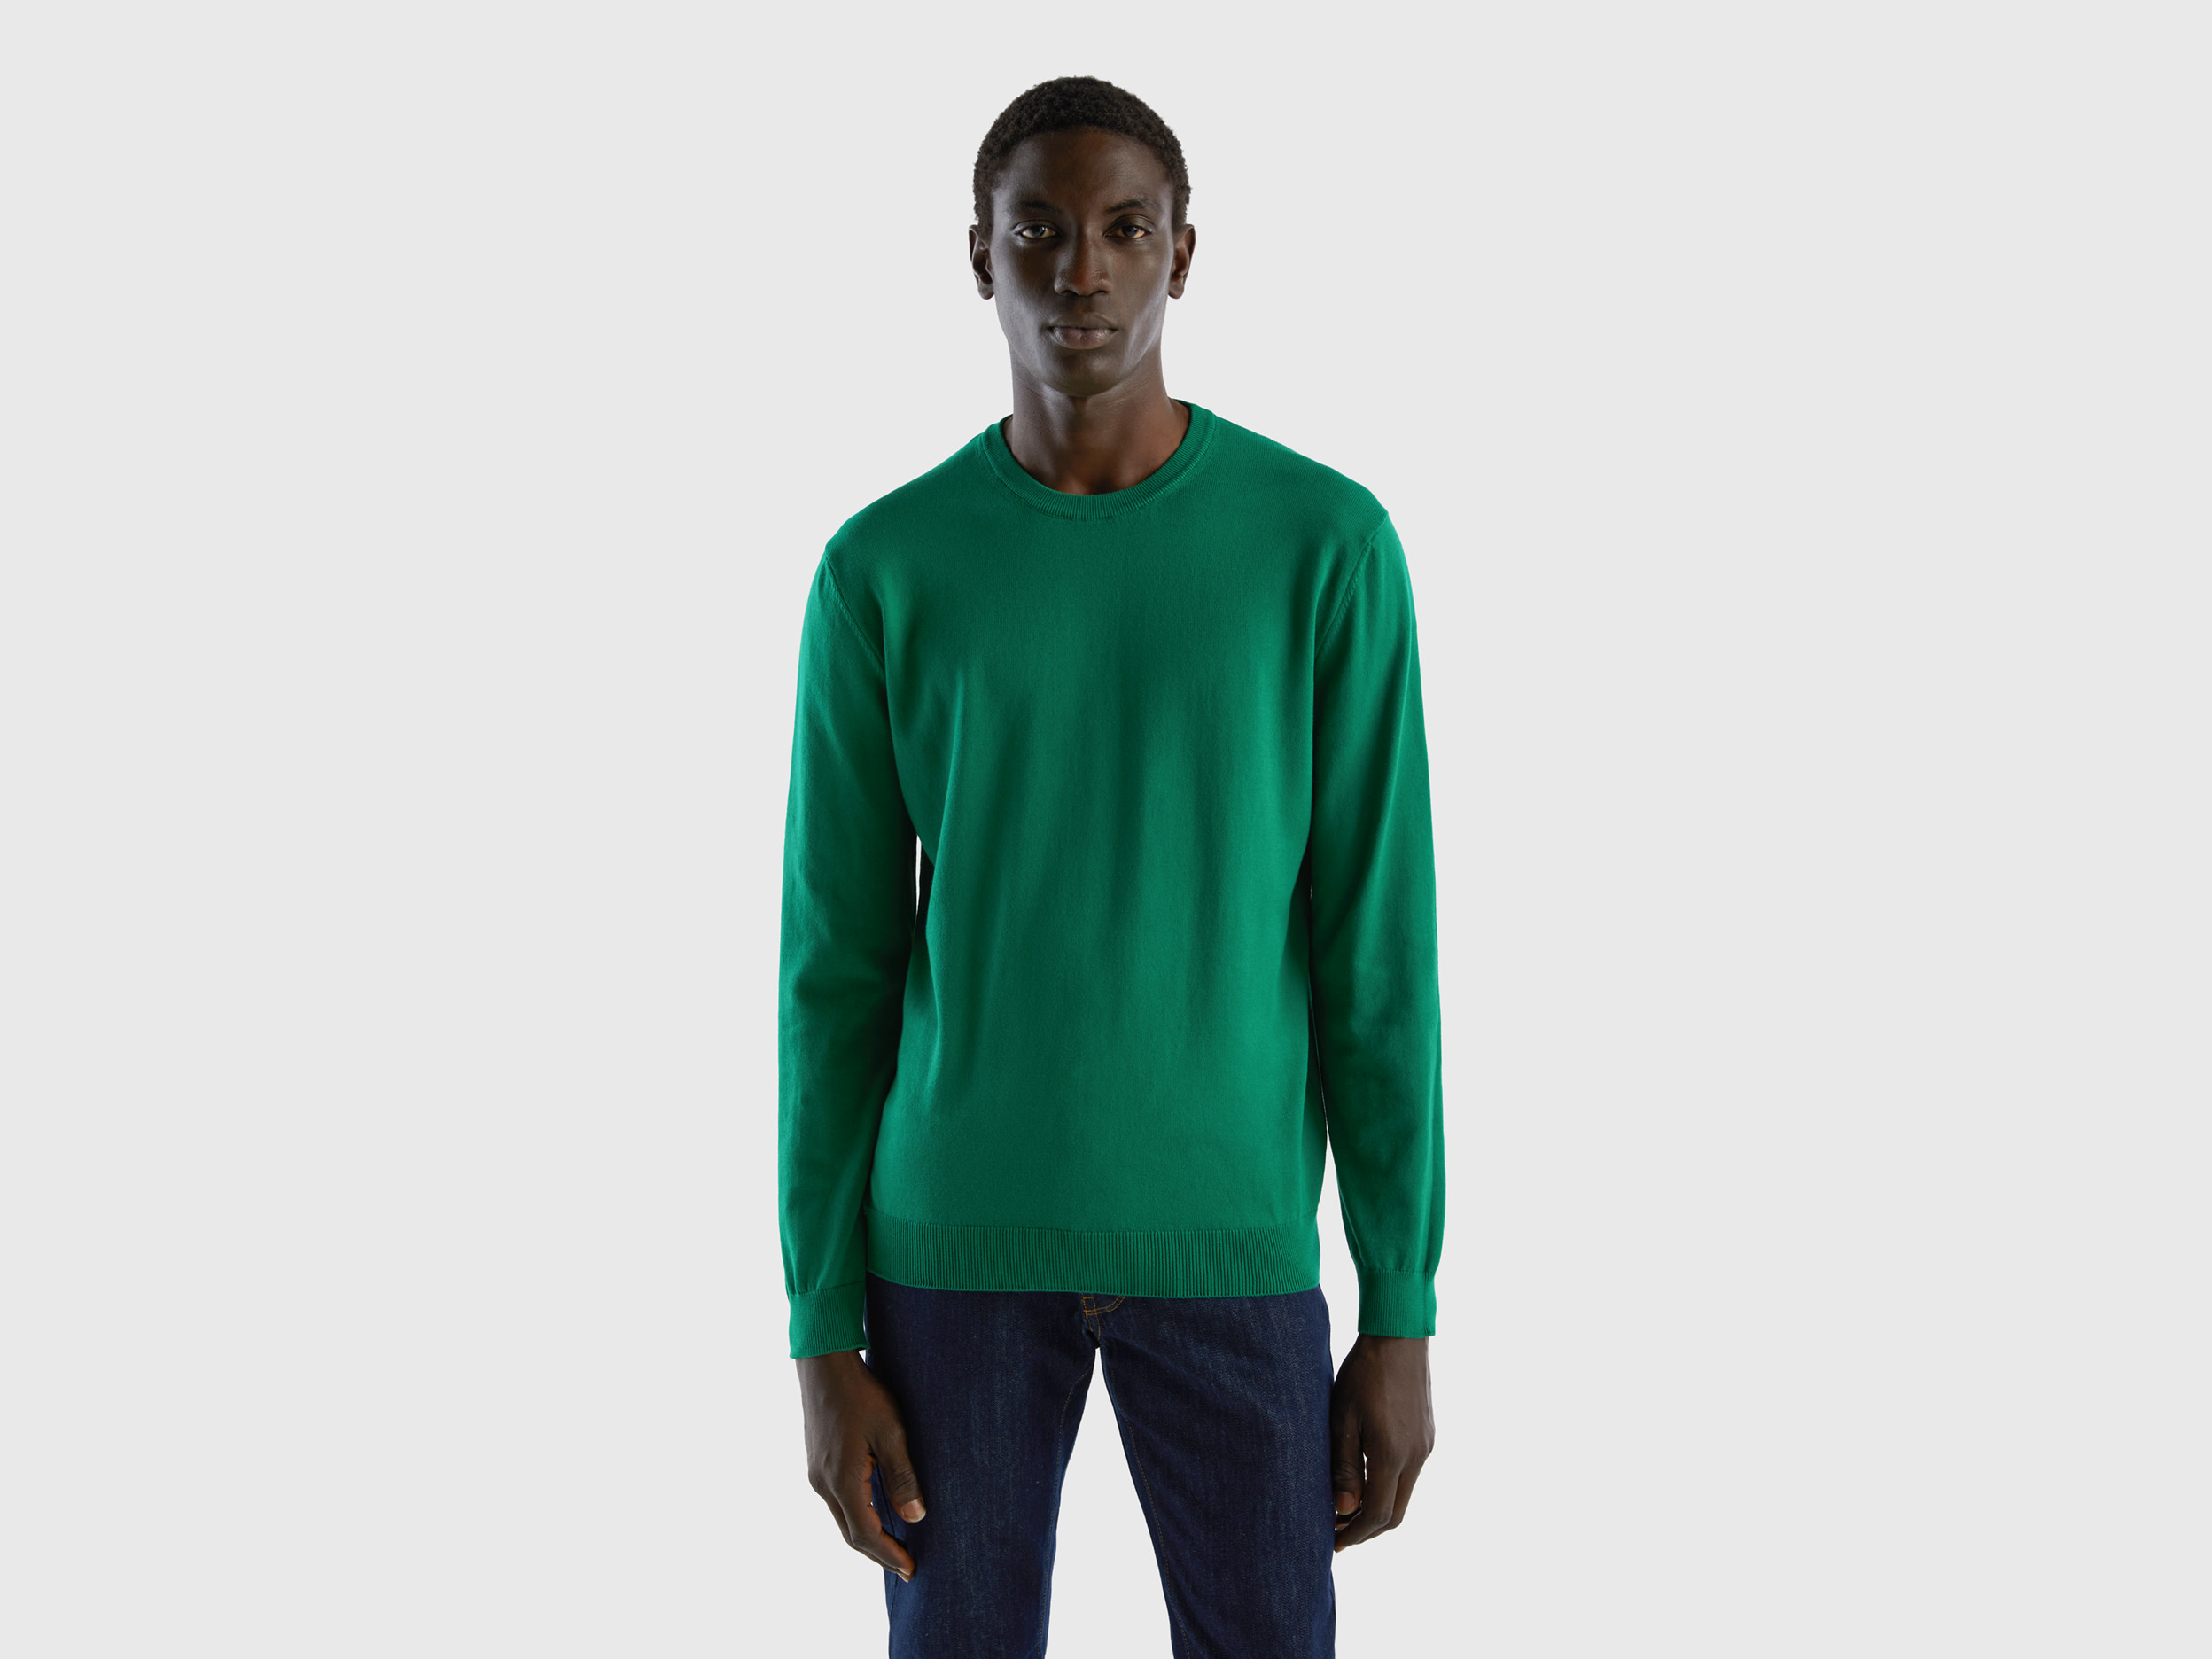 Benetton, Crew Neck Sweater In 100% Cotton, size XL, Dark Green, Men